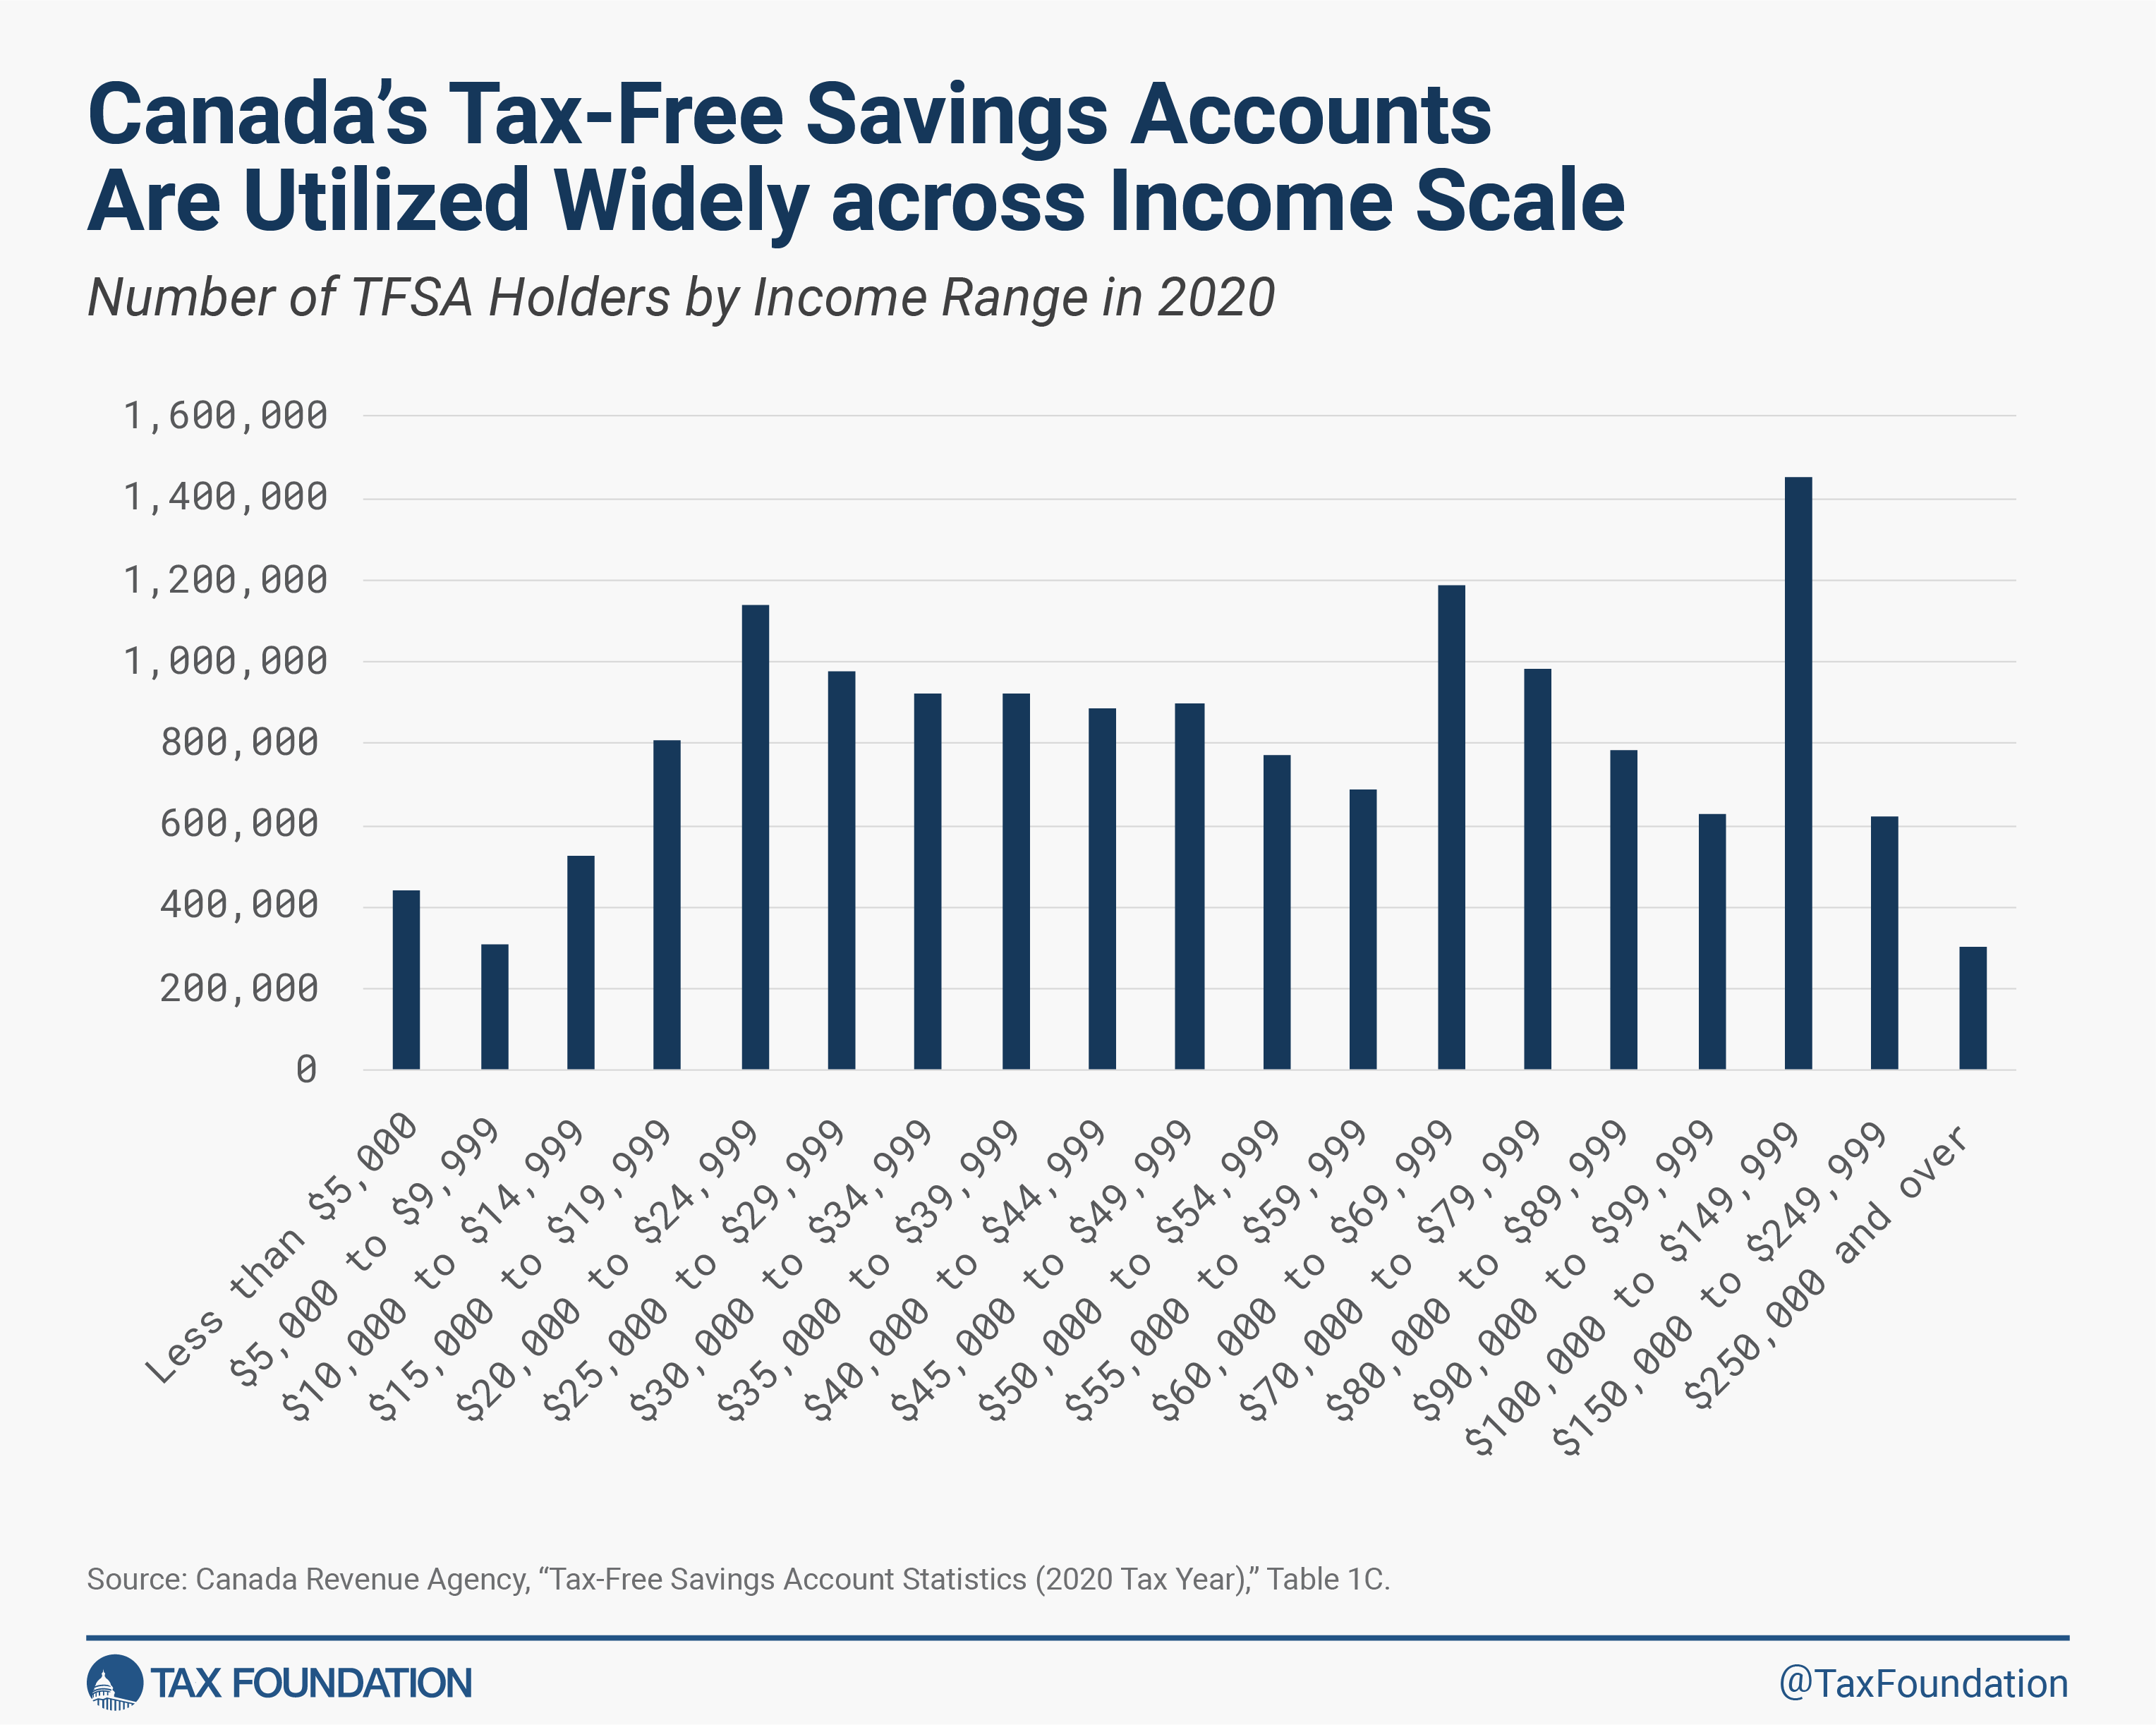 Les comptes d'épargne libres d'impôt du Canada sont largement utilisés sur toute l'échelle des revenus.